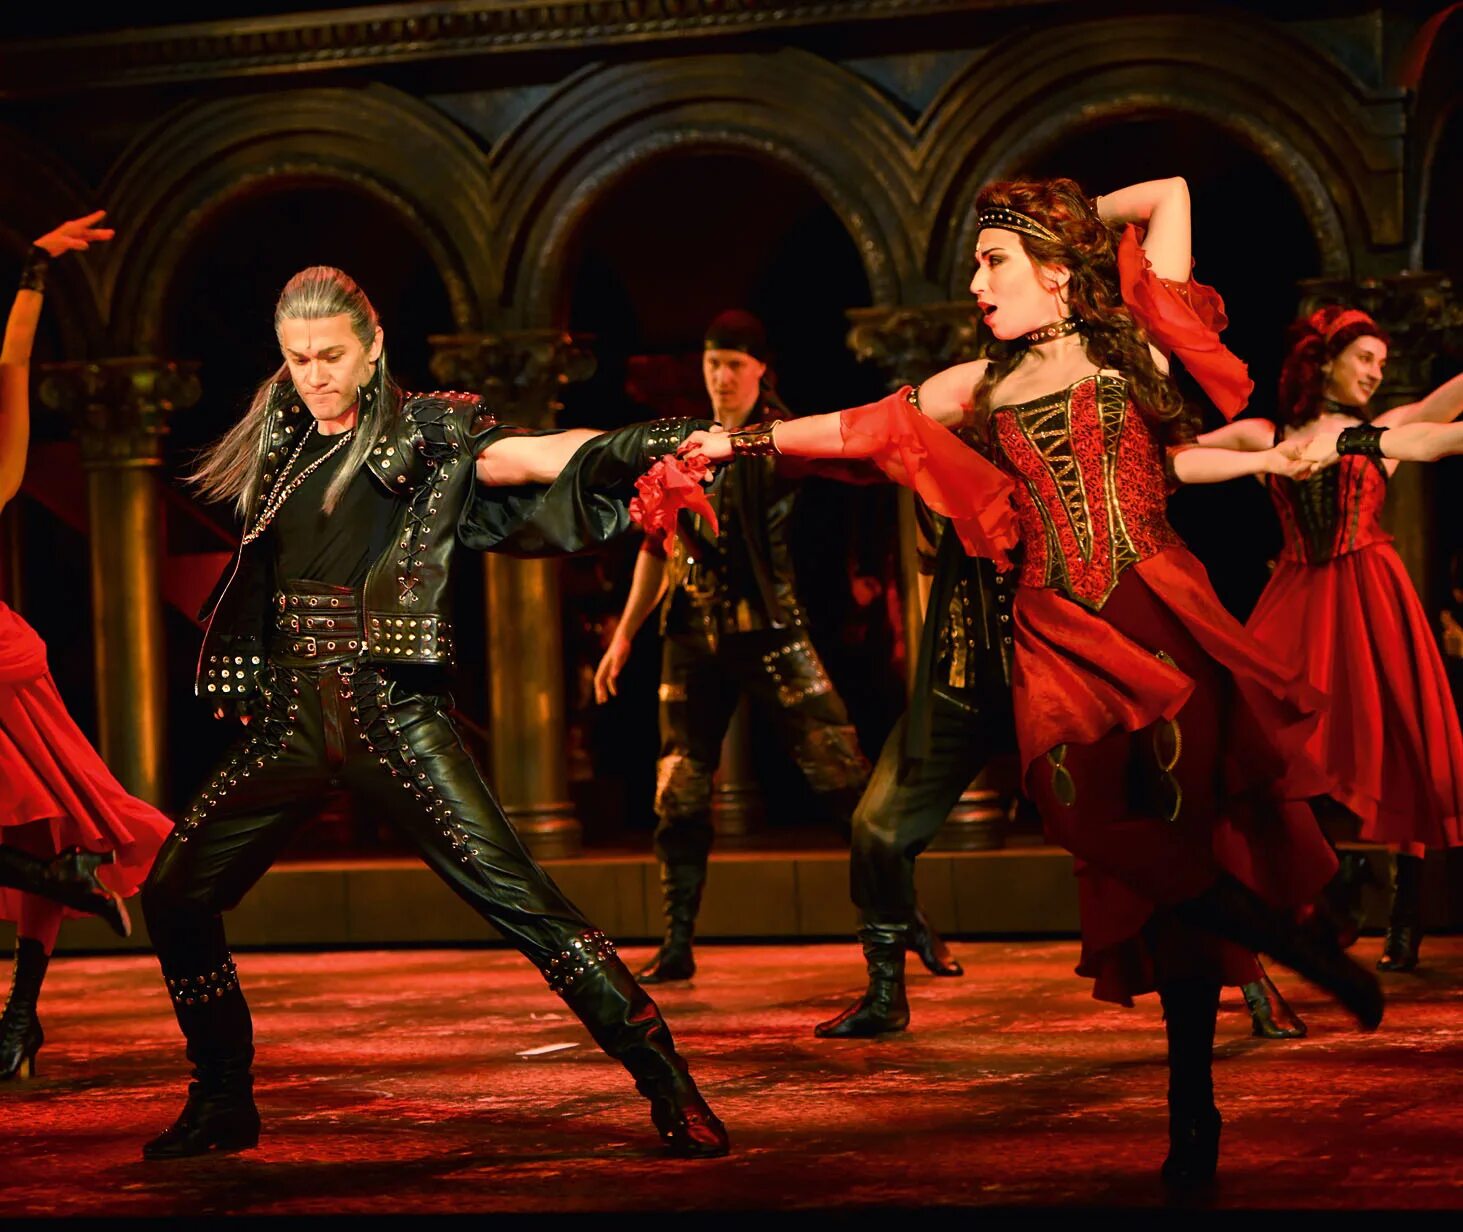 Несколько мюзиклов. Ромео против Джульетты мюзикл театр оперетты.